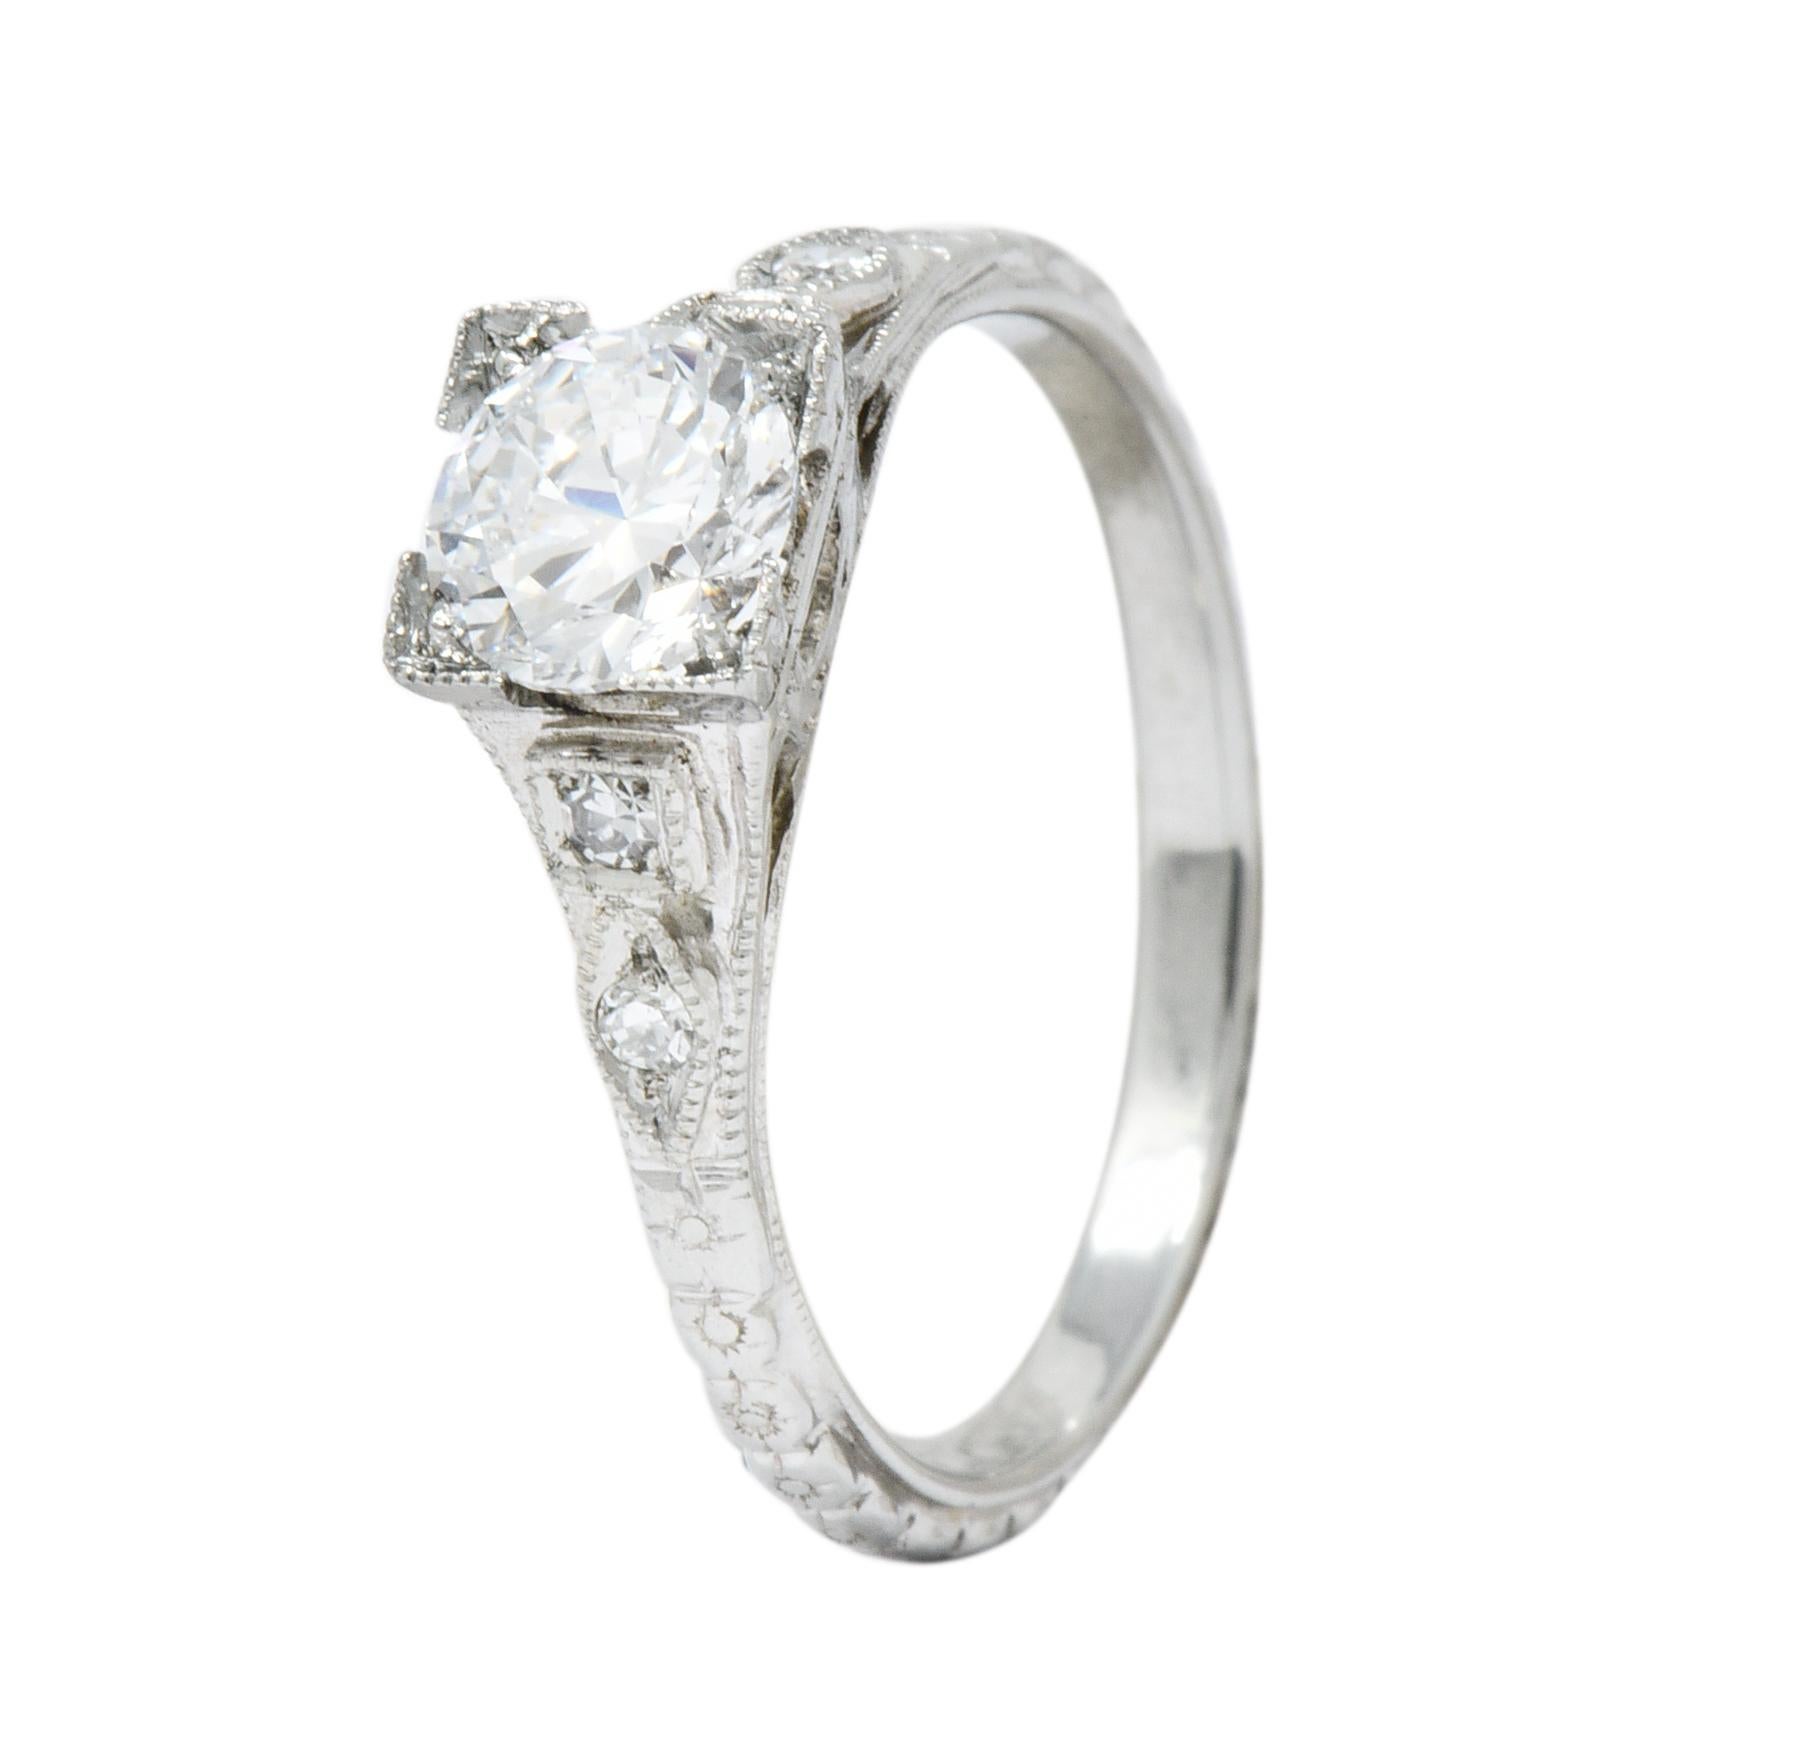 White Rose Mfg. Co. Art Deco Diamond 18 Karat White Gold Engagement Ring 1